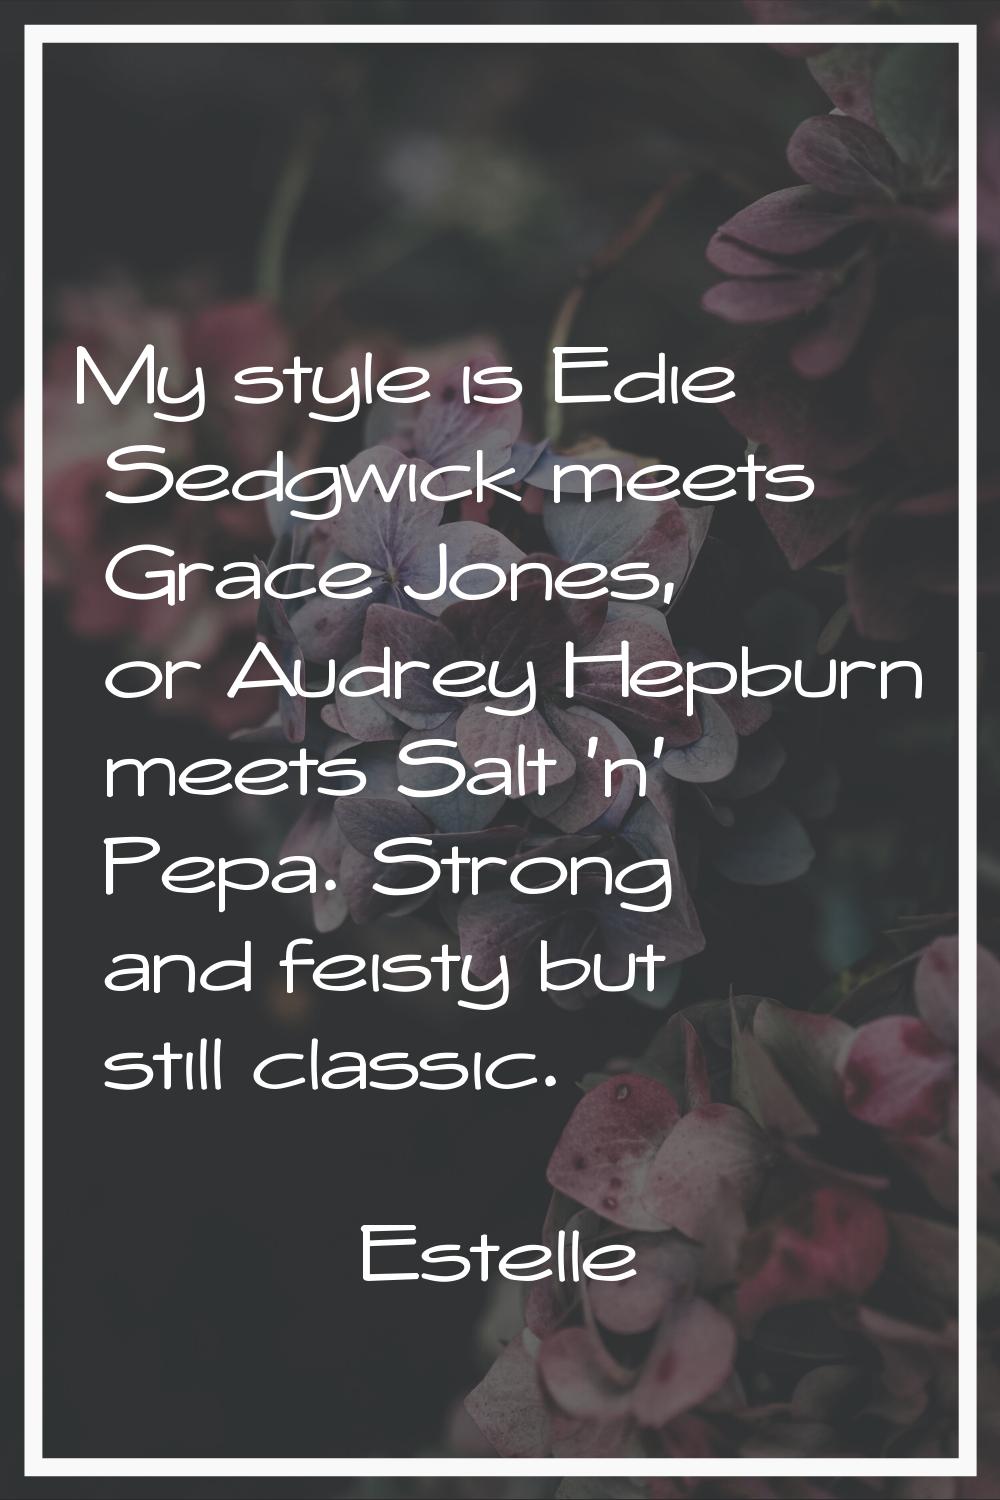 My style is Edie Sedgwick meets Grace Jones, or Audrey Hepburn meets Salt 'n' Pepa. Strong and feis